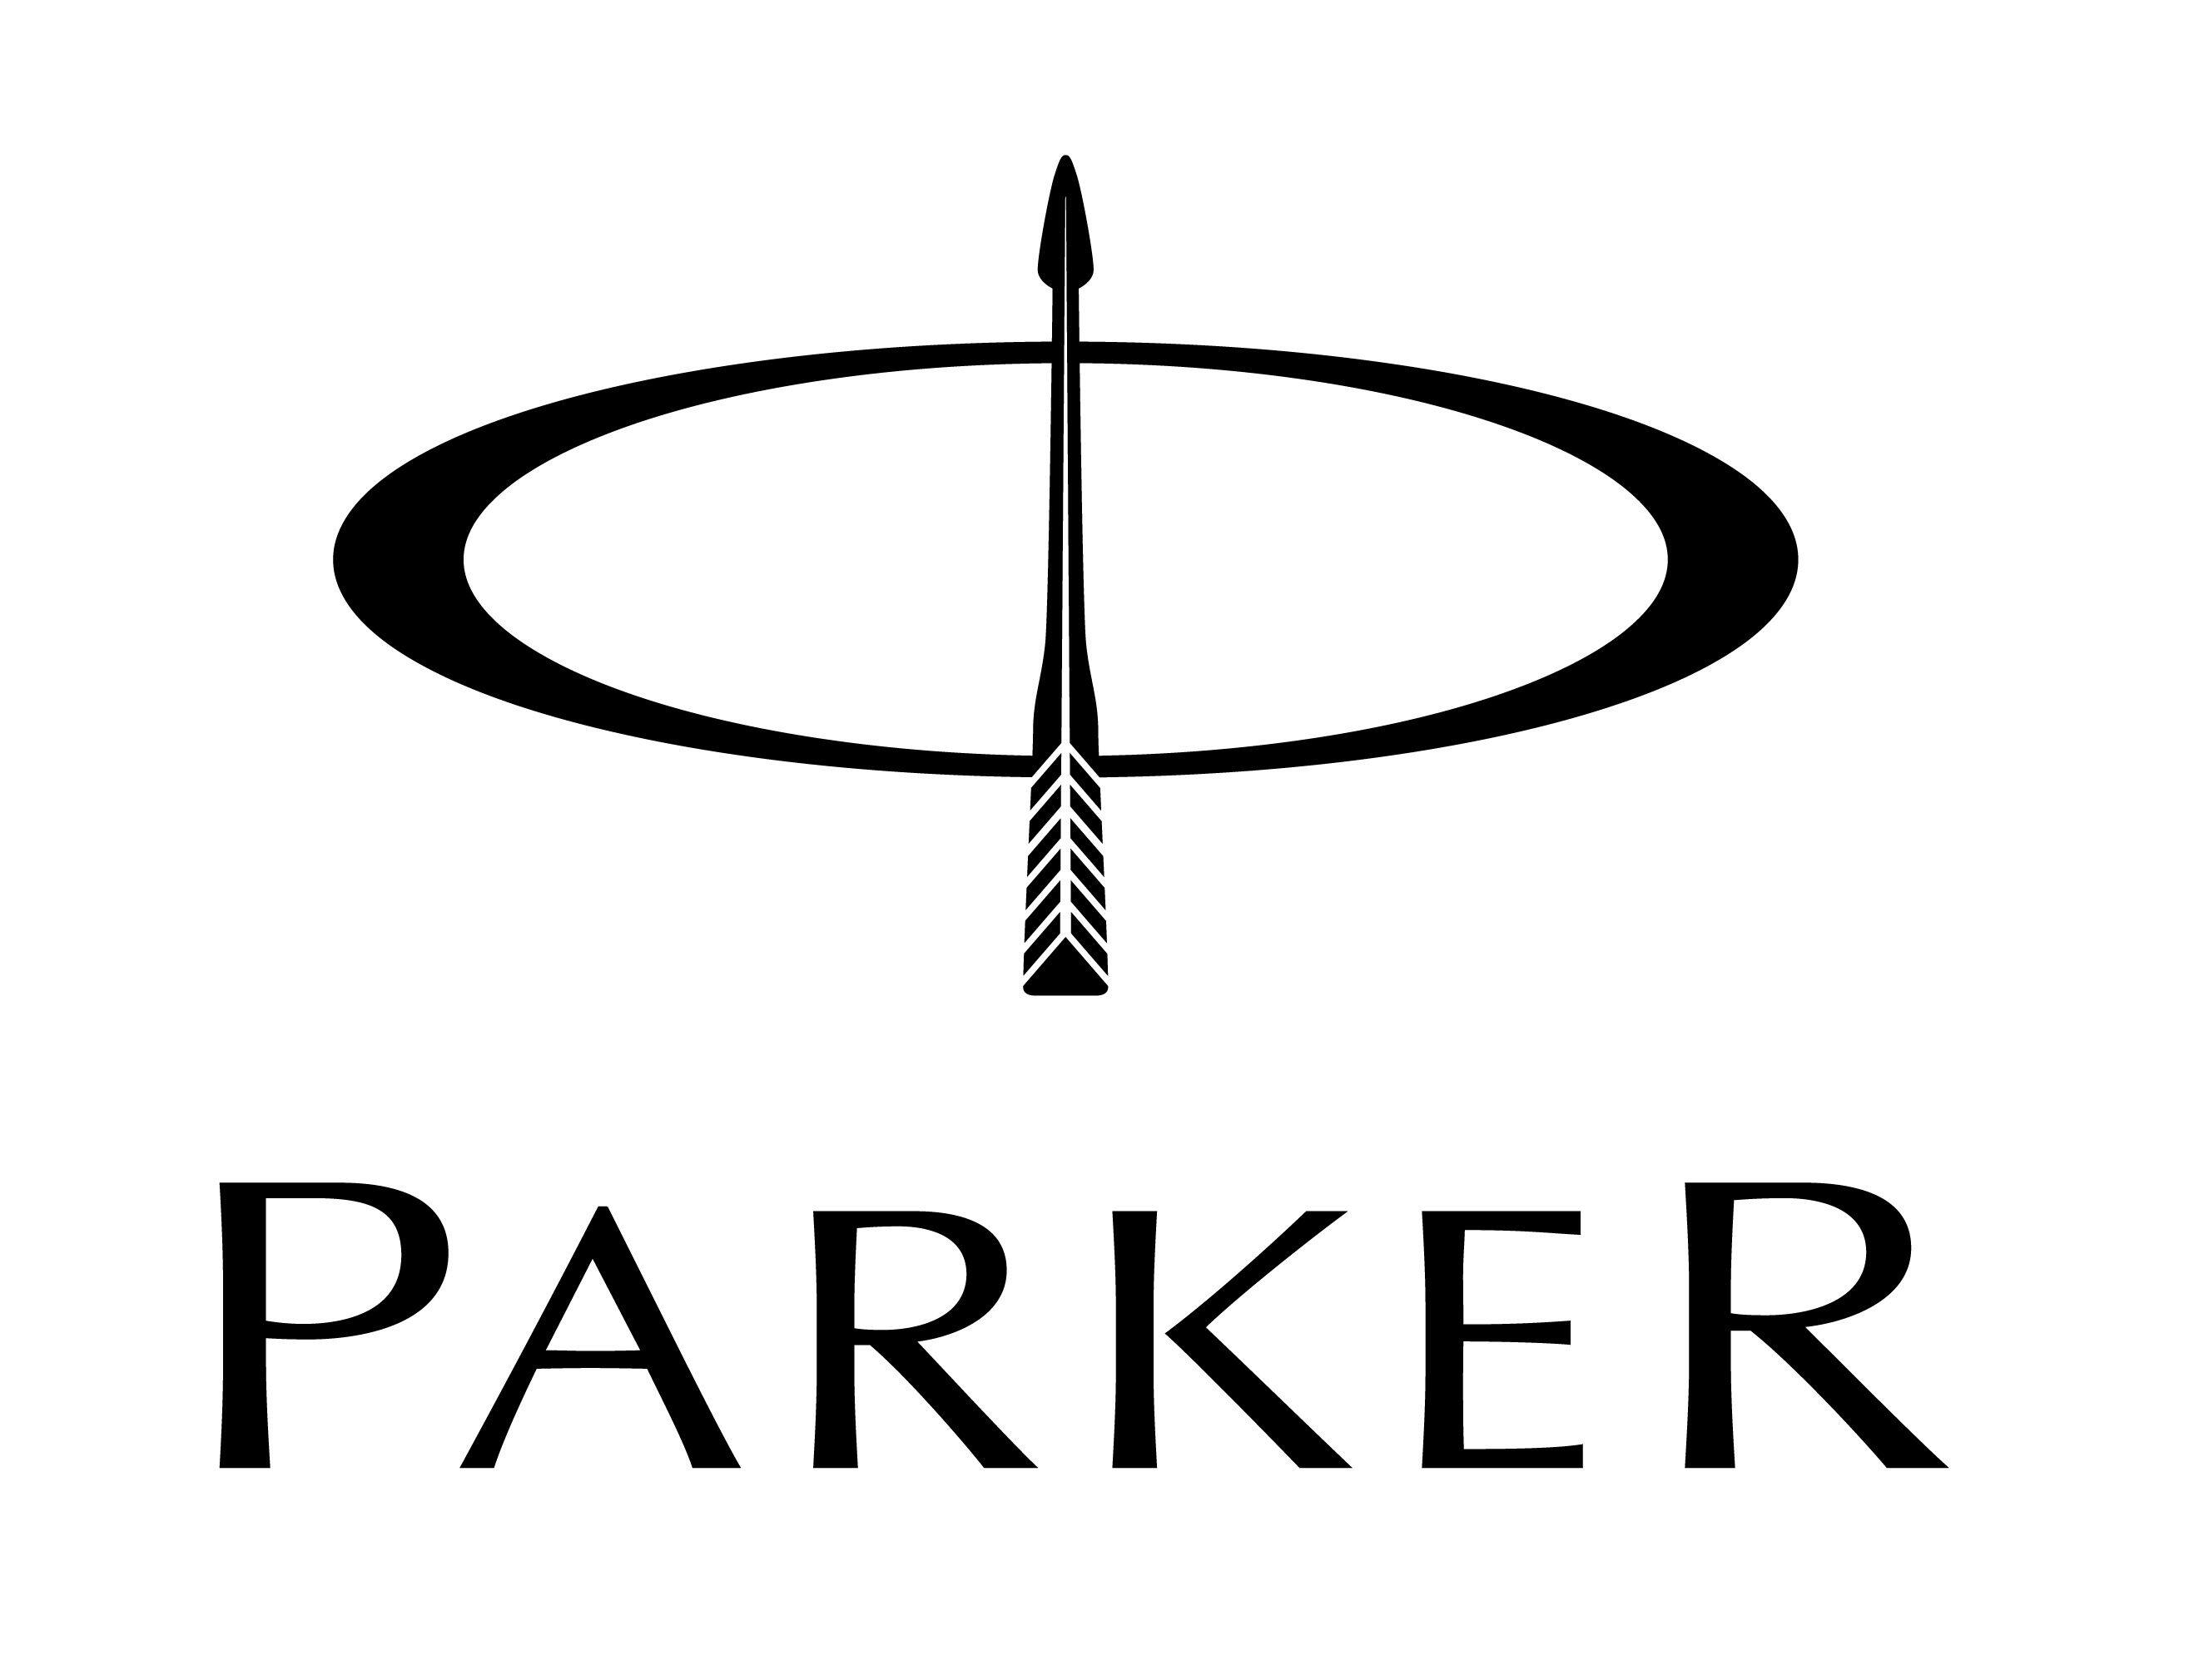 8 PARKER PEN ideas | parker pen, pen, parker